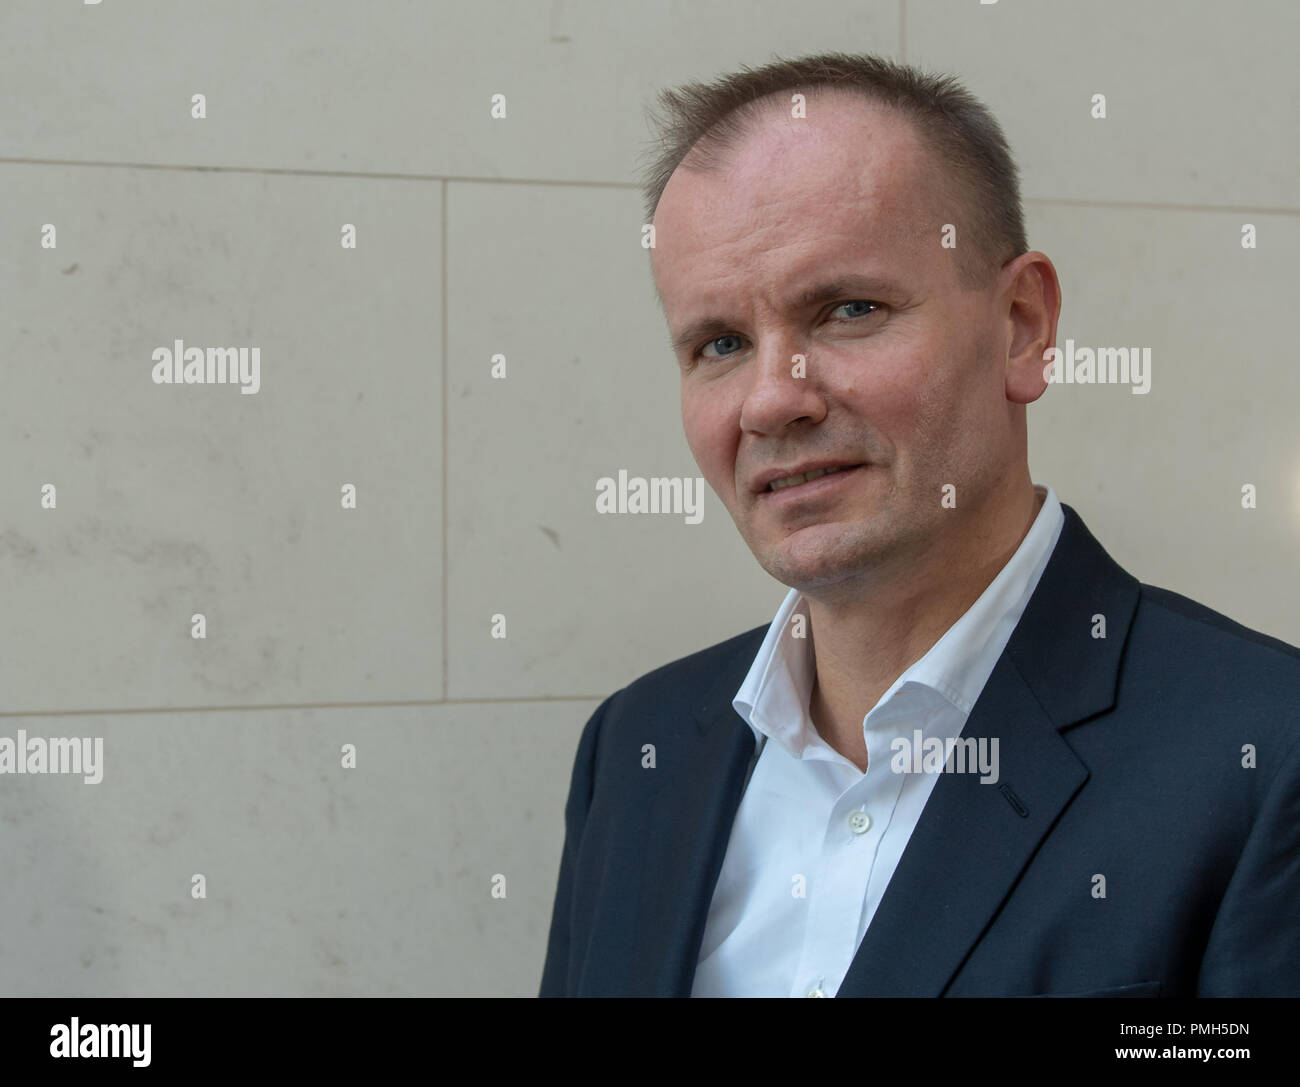 München, Bayern. 18 Sep, 2018. Markus Braun, CEO Wirecard, beim Fototermin  am Hauptsitz des Unternehmens. Credit: Peter Kneffel/dpa/Alamy leben  Nachrichten Stockfotografie - Alamy